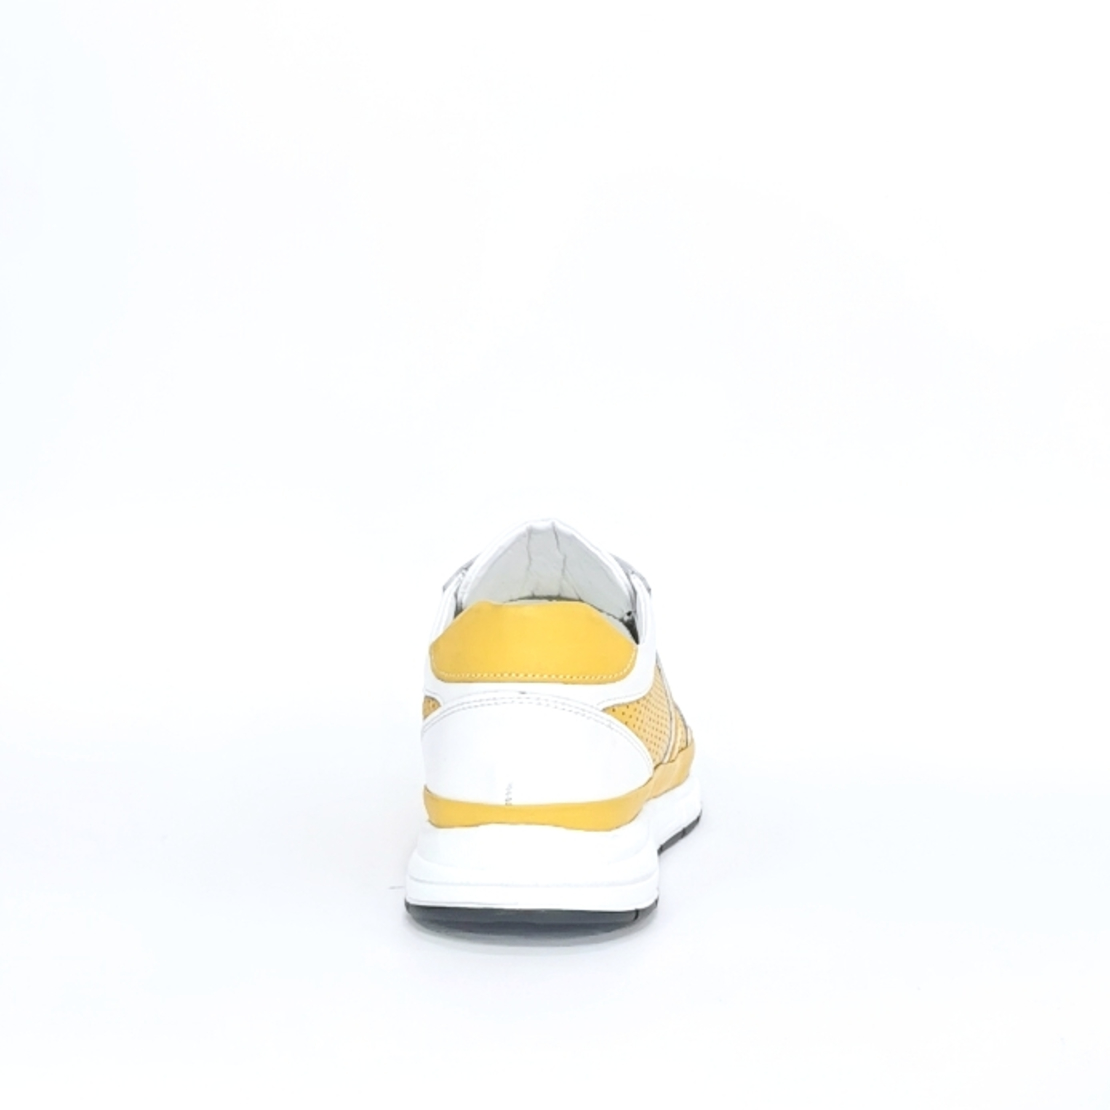 Мужкие кроссовки из натуральнай кожи 7206 белого и желтьй цвета